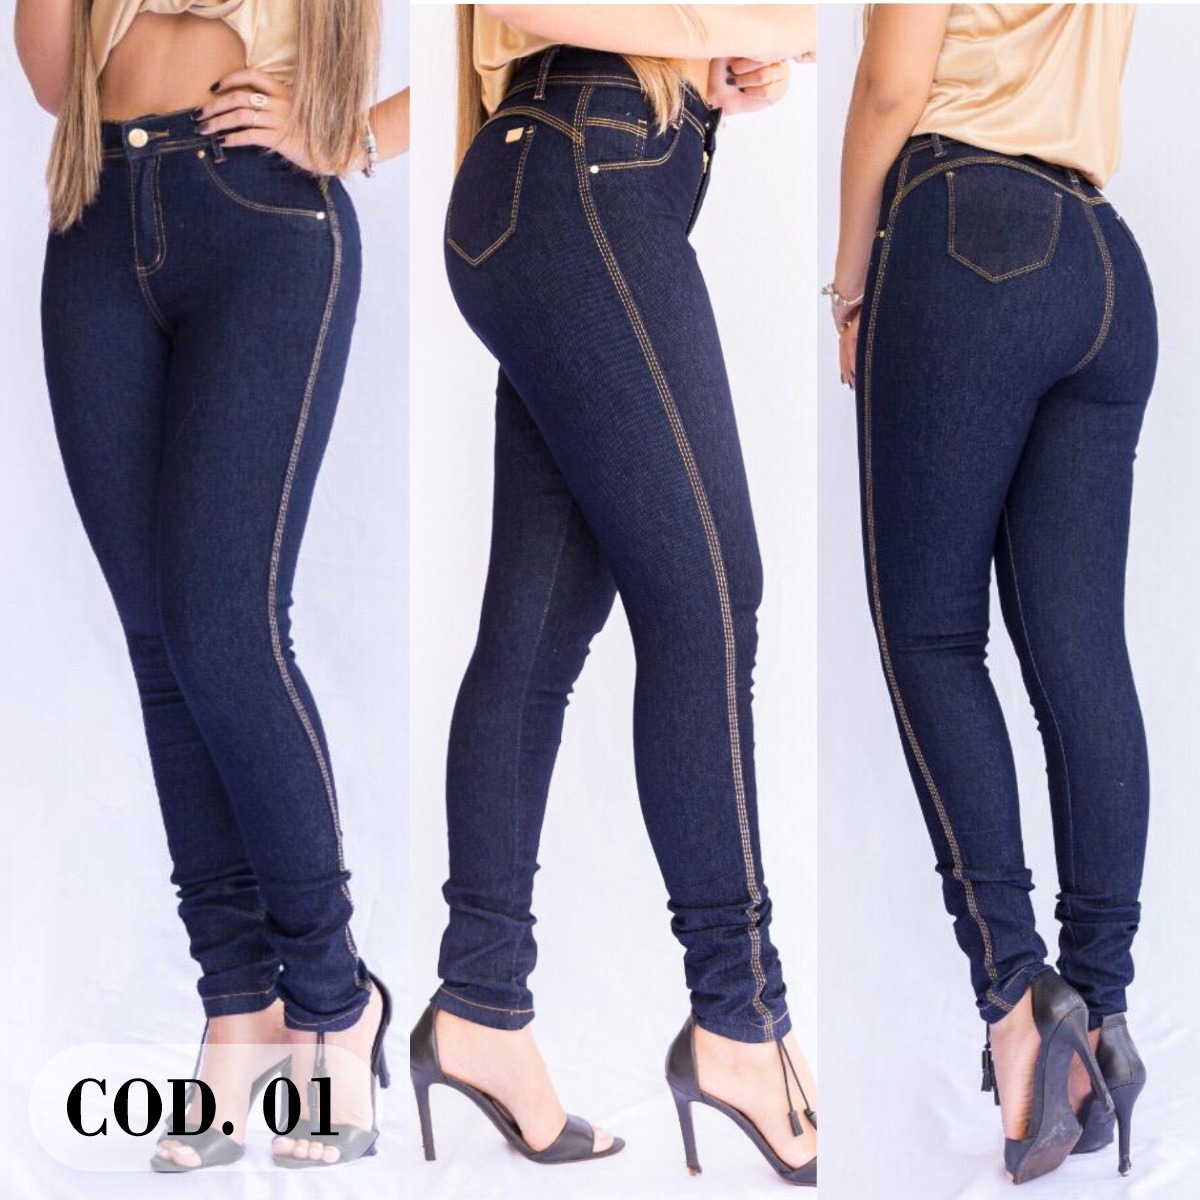 calça jeans preta feminina cintura alta mercado livre